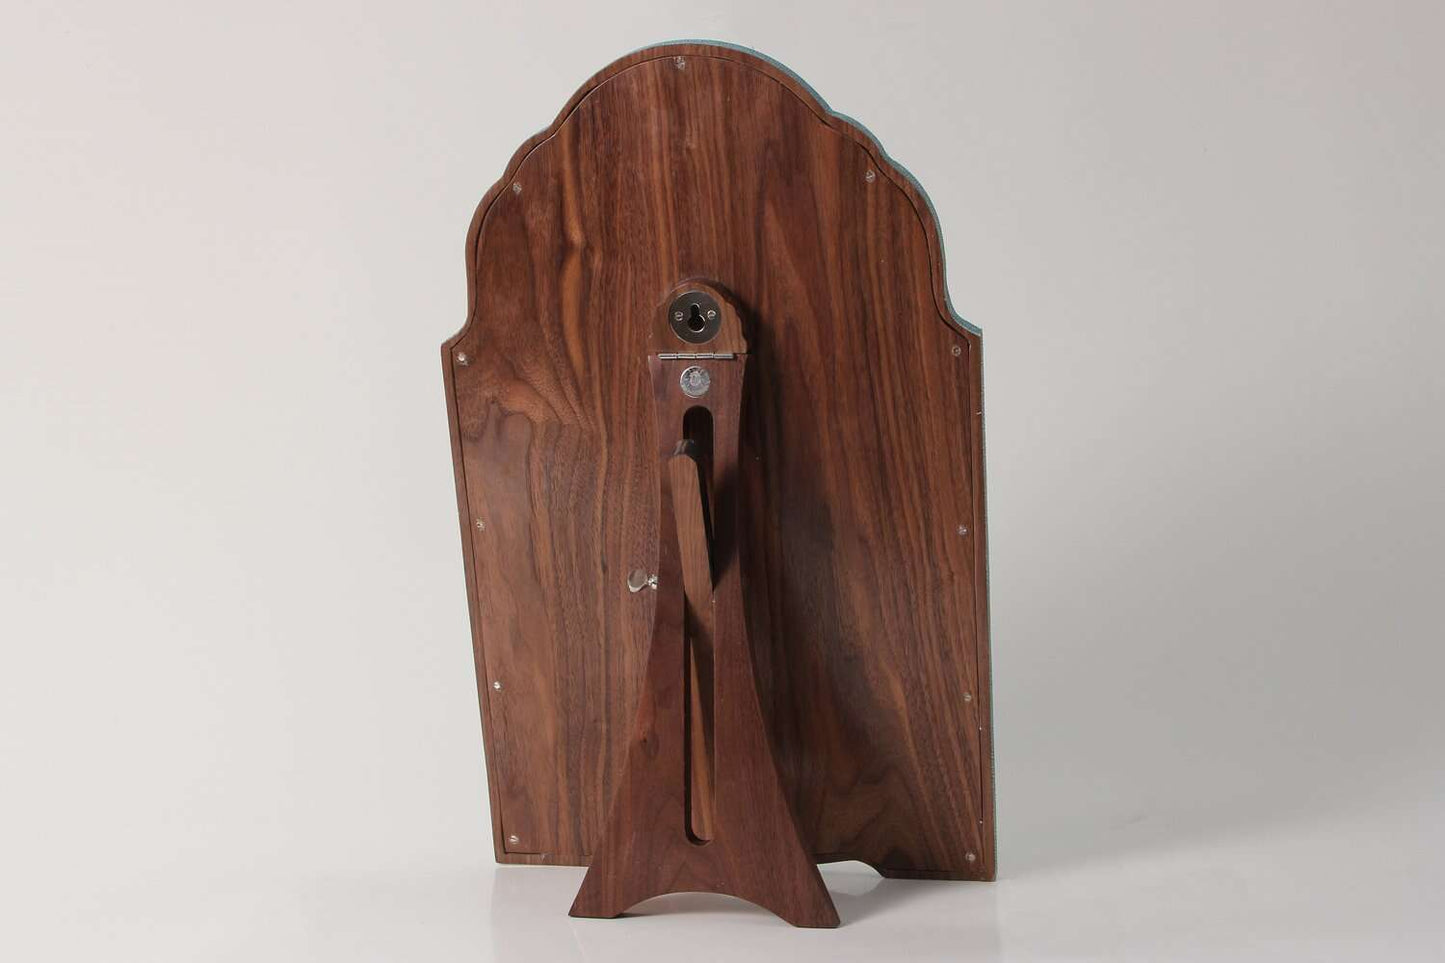  https://forwooddesign.com/app/uploads/2019/07/Teal-shagreen-dressing-table-mirror-5.jpg